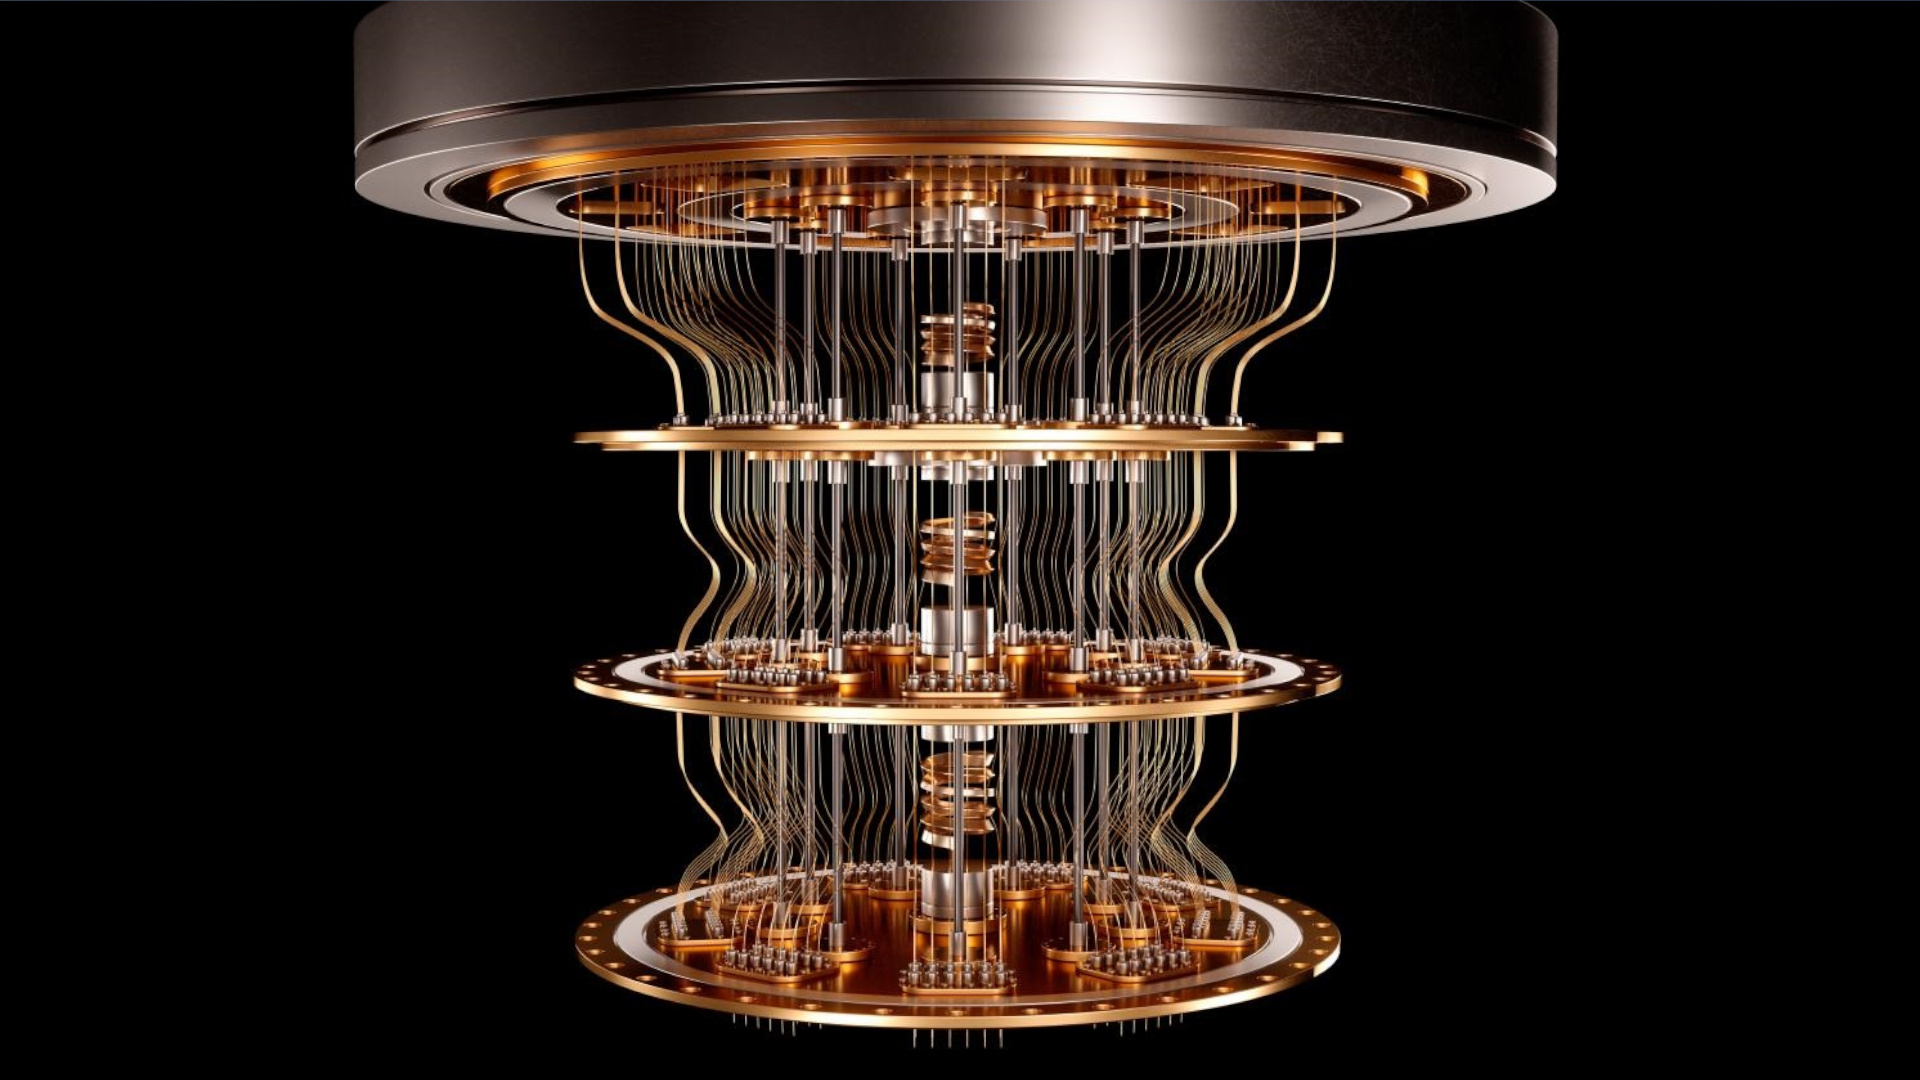 Imagen representativa de una figura de color cobre formada por circunferencias de diferentes tamaños colocadas unas sobre otras formando un cilindro.